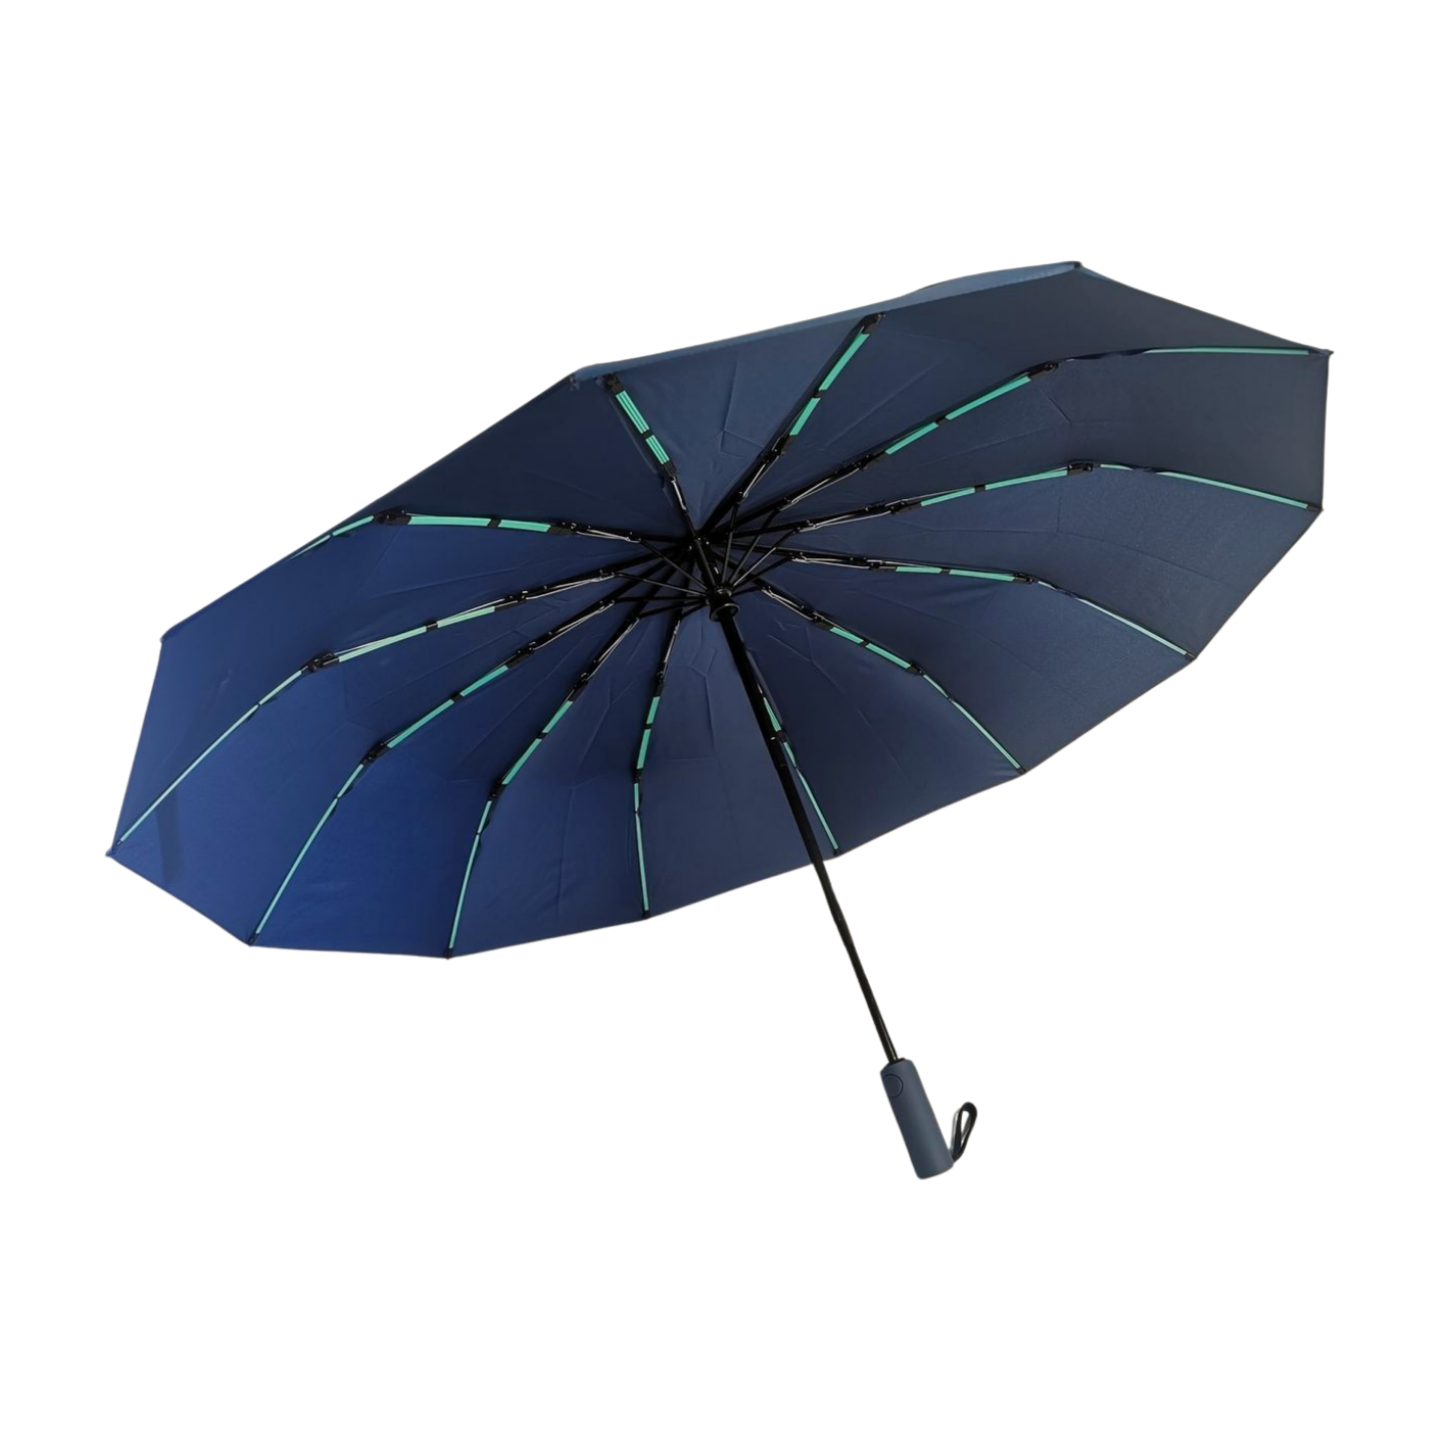 https://www.hodaumbrella.com/12-ribs-strong…lding-umbrella-product/